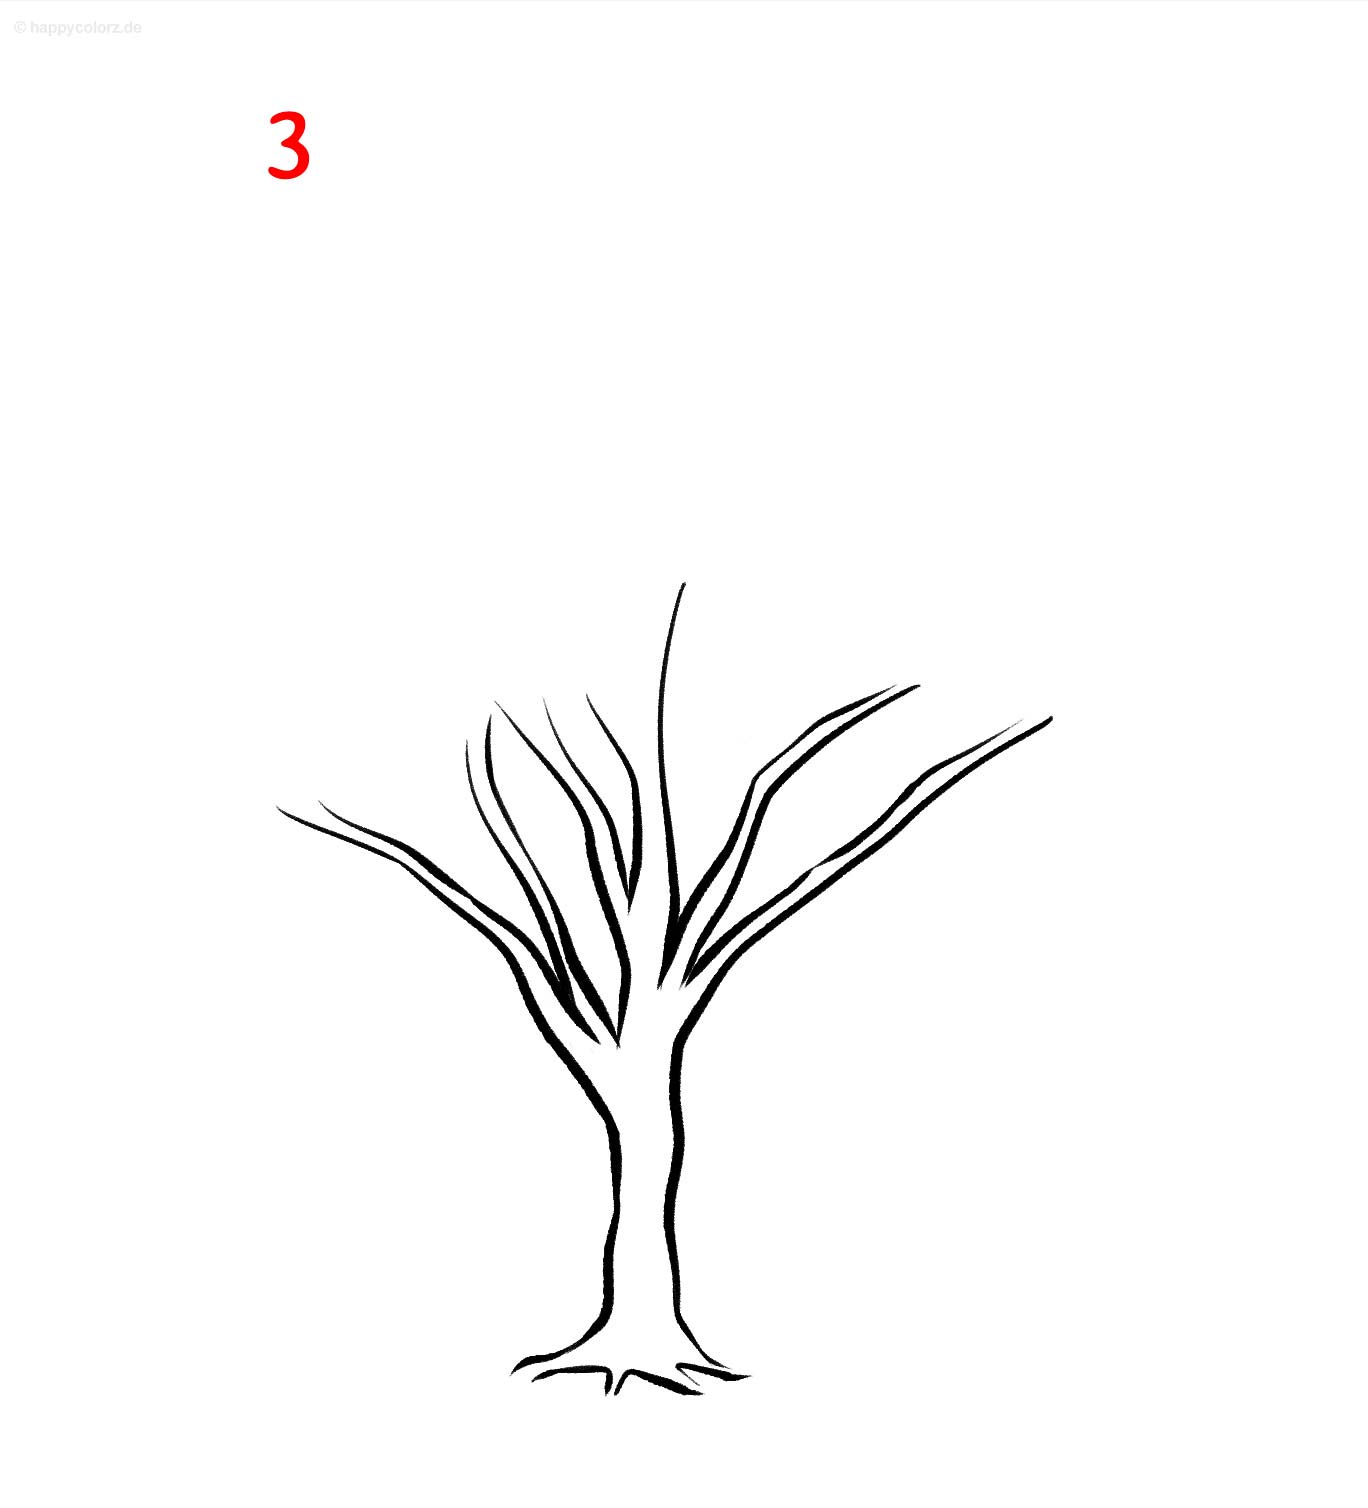 Baum zeichnen - Anleitung